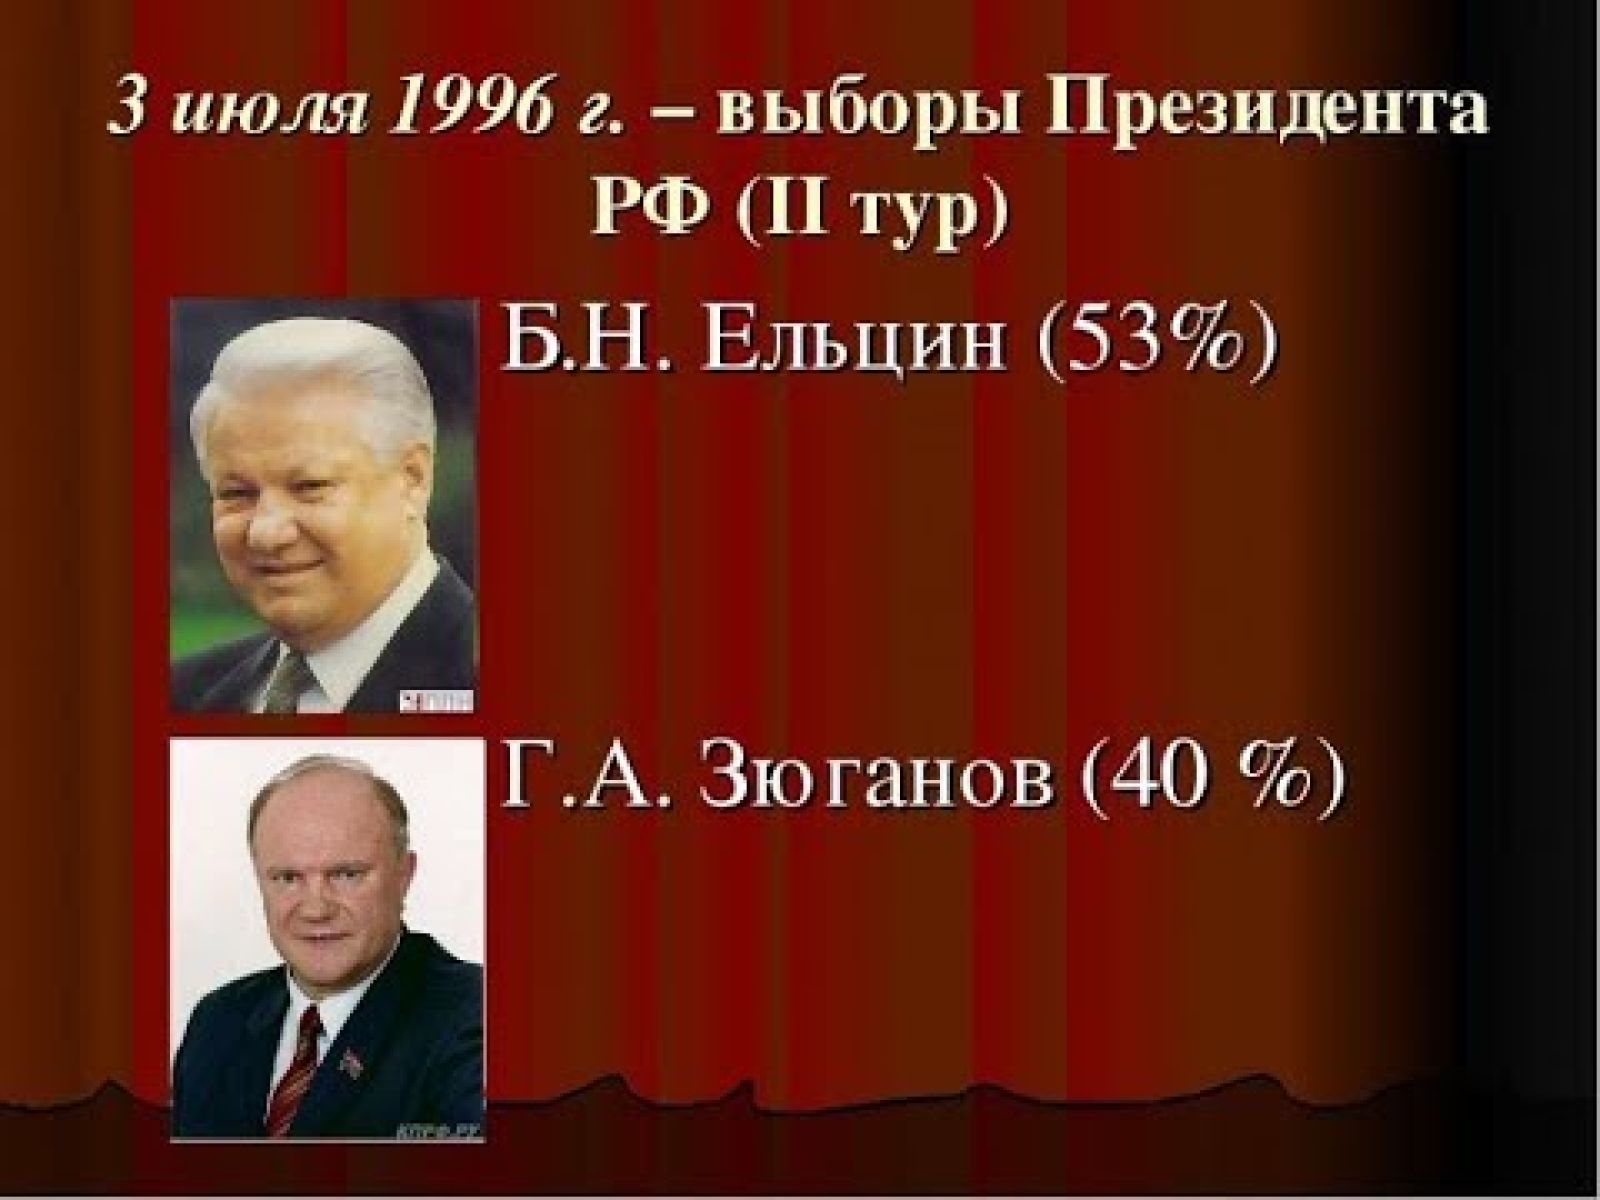 Вторые туры президентских выборов. Ельцин и Зюганов выборы президента 1996 года. Президентские выборы в России 1996 года второй тур.